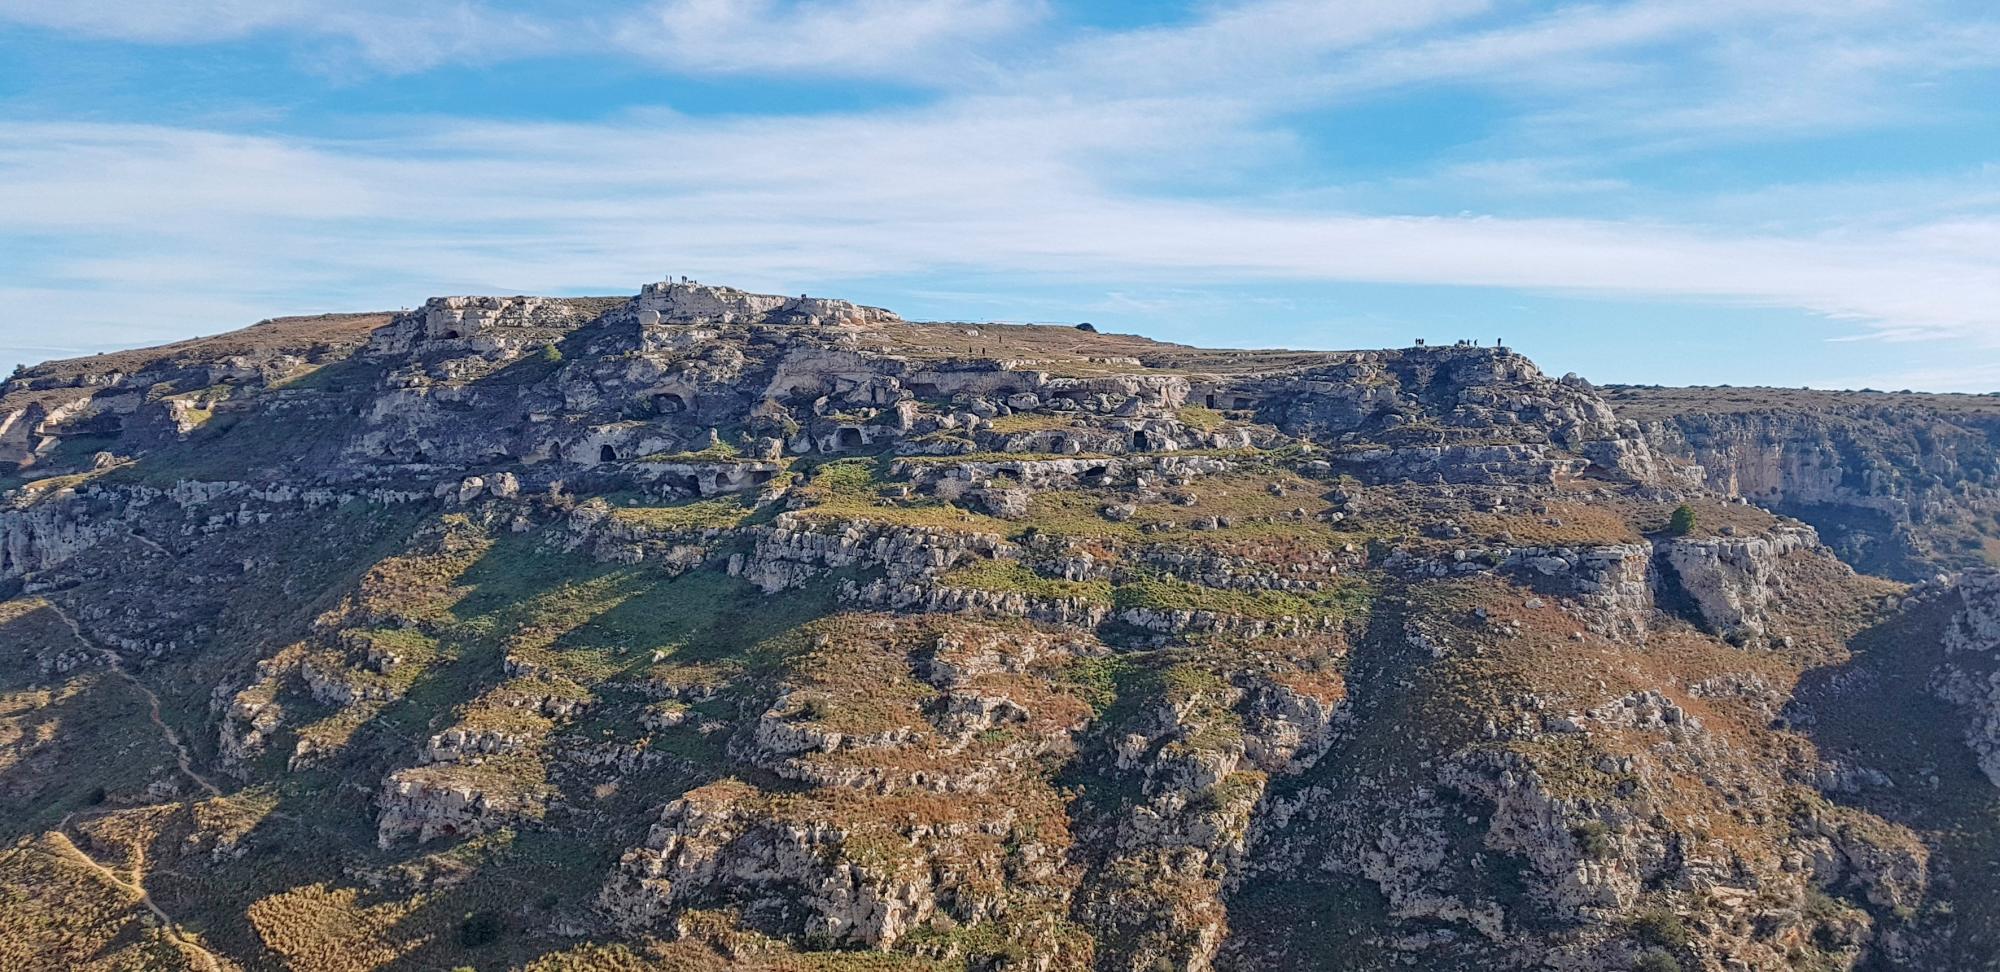 Vista del Parque Nacional de la Murgia de Matera y de sus cuevas e iglesias rupestres, declaradas Patrimonio de la Humanidad por la UNESCO en 1993 junto al barrio de los  “Sassi“;, un asentamiento de casas excavadas en la roca.